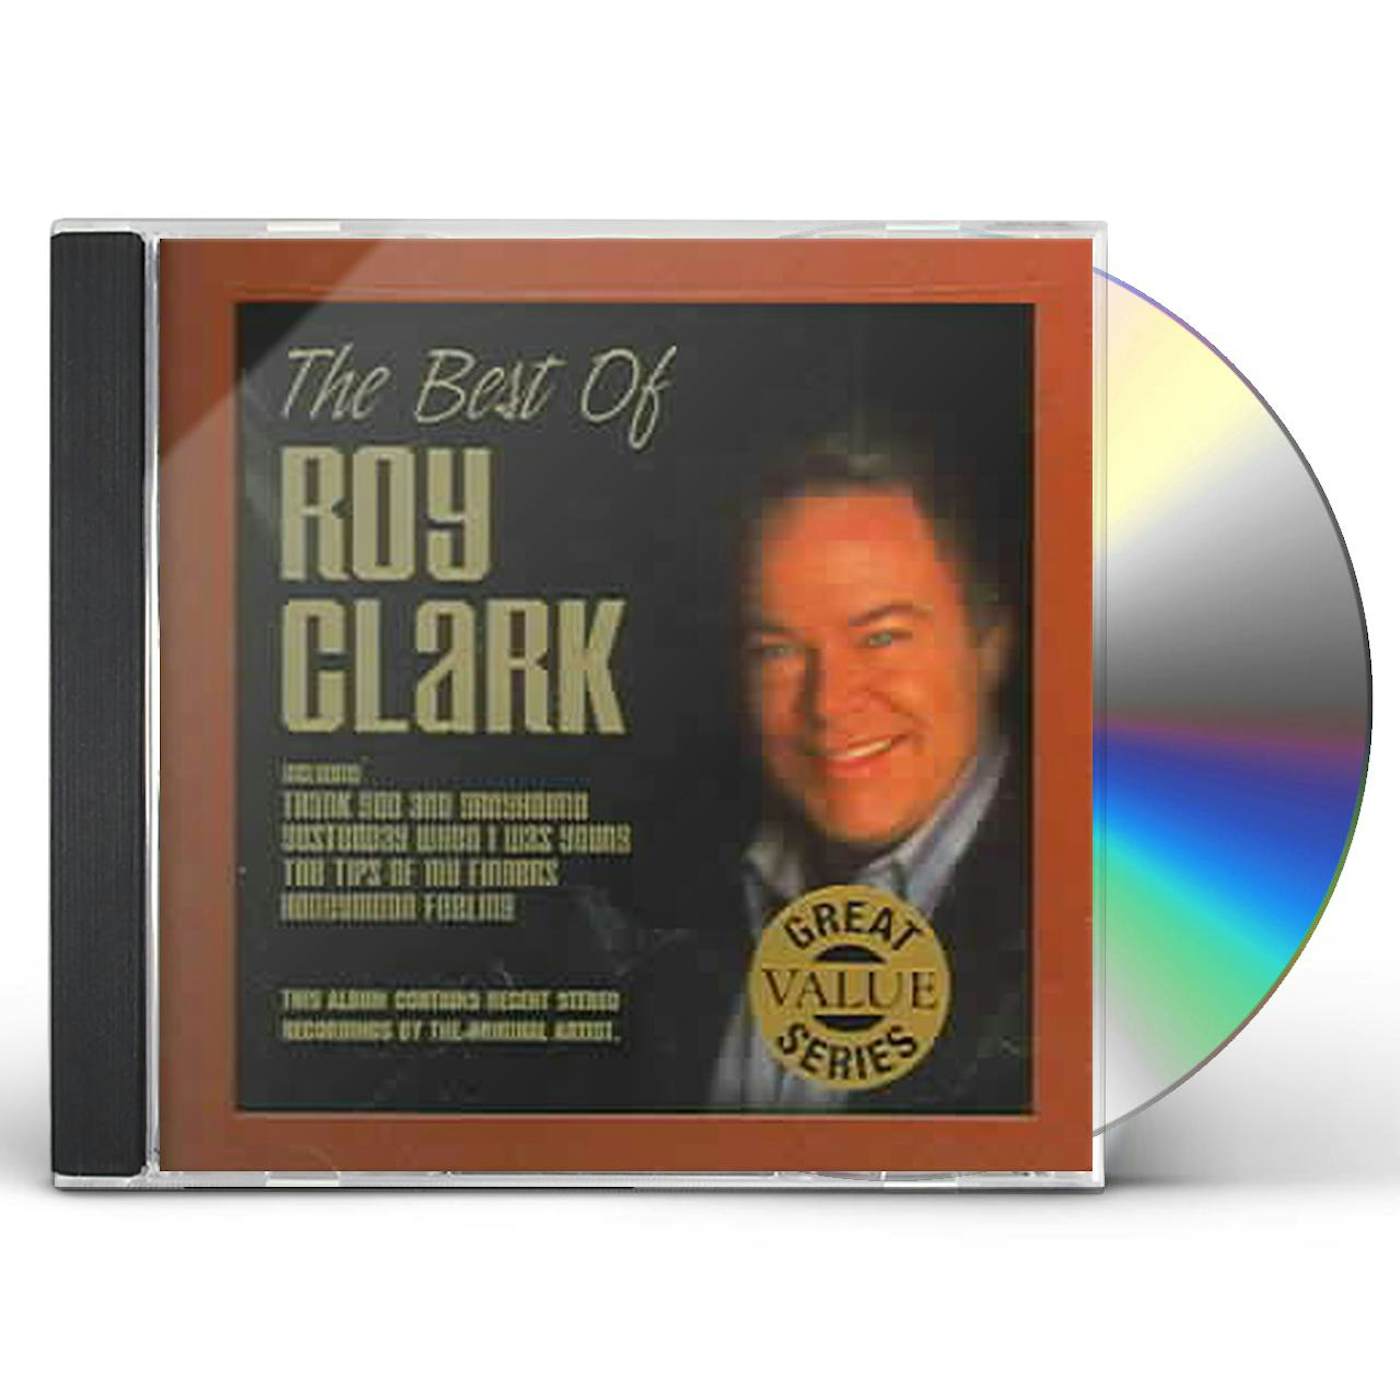 BEST OF ROY CLARK CD